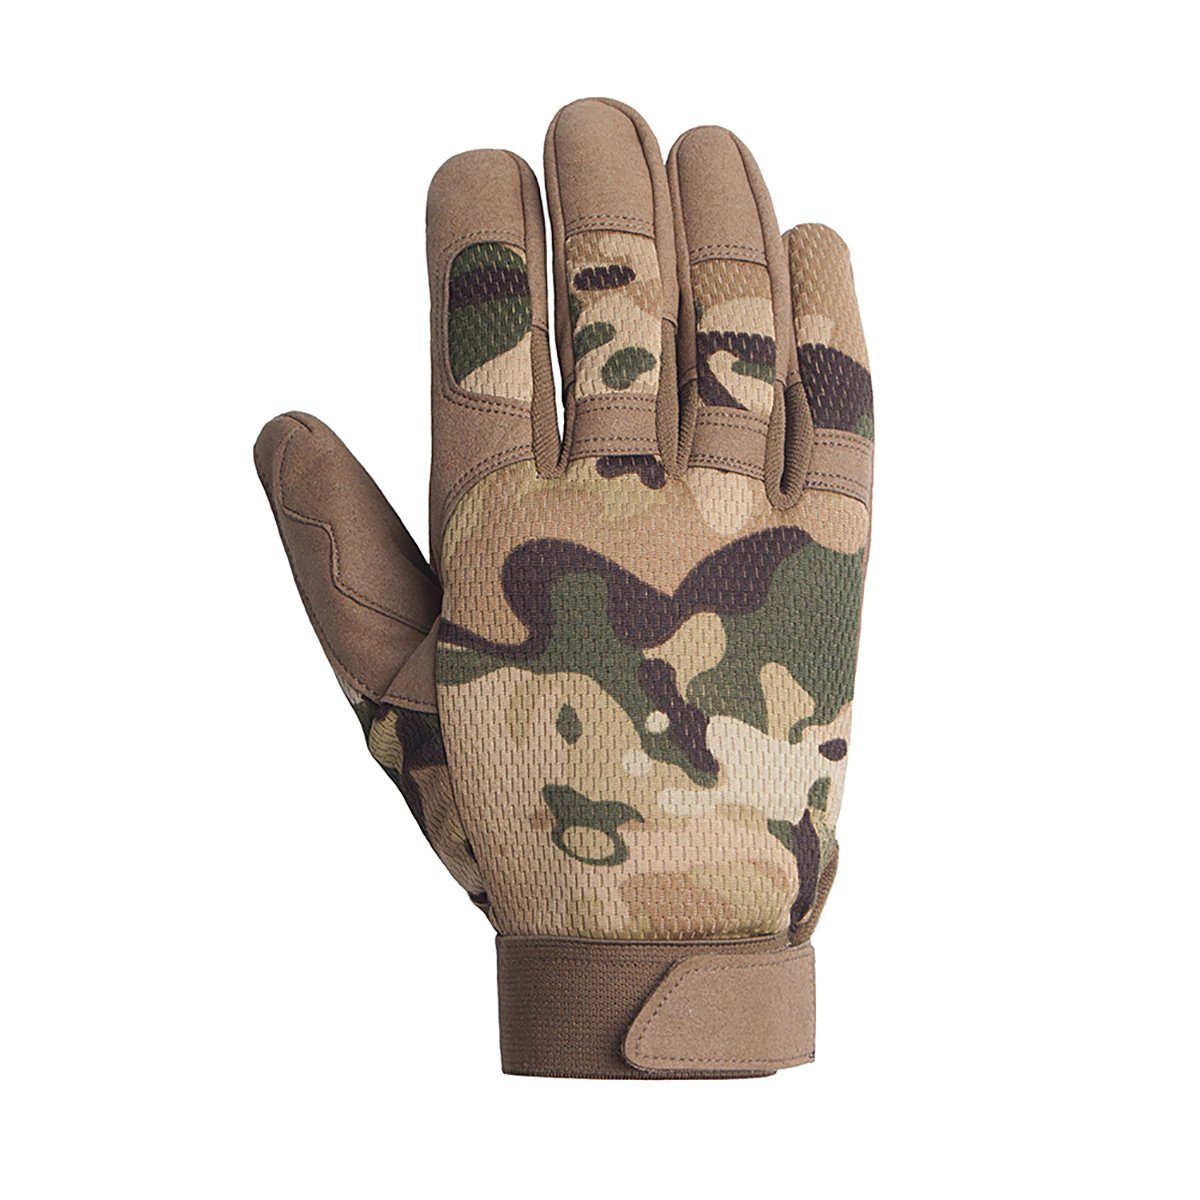 Men's Military Designed Gloves